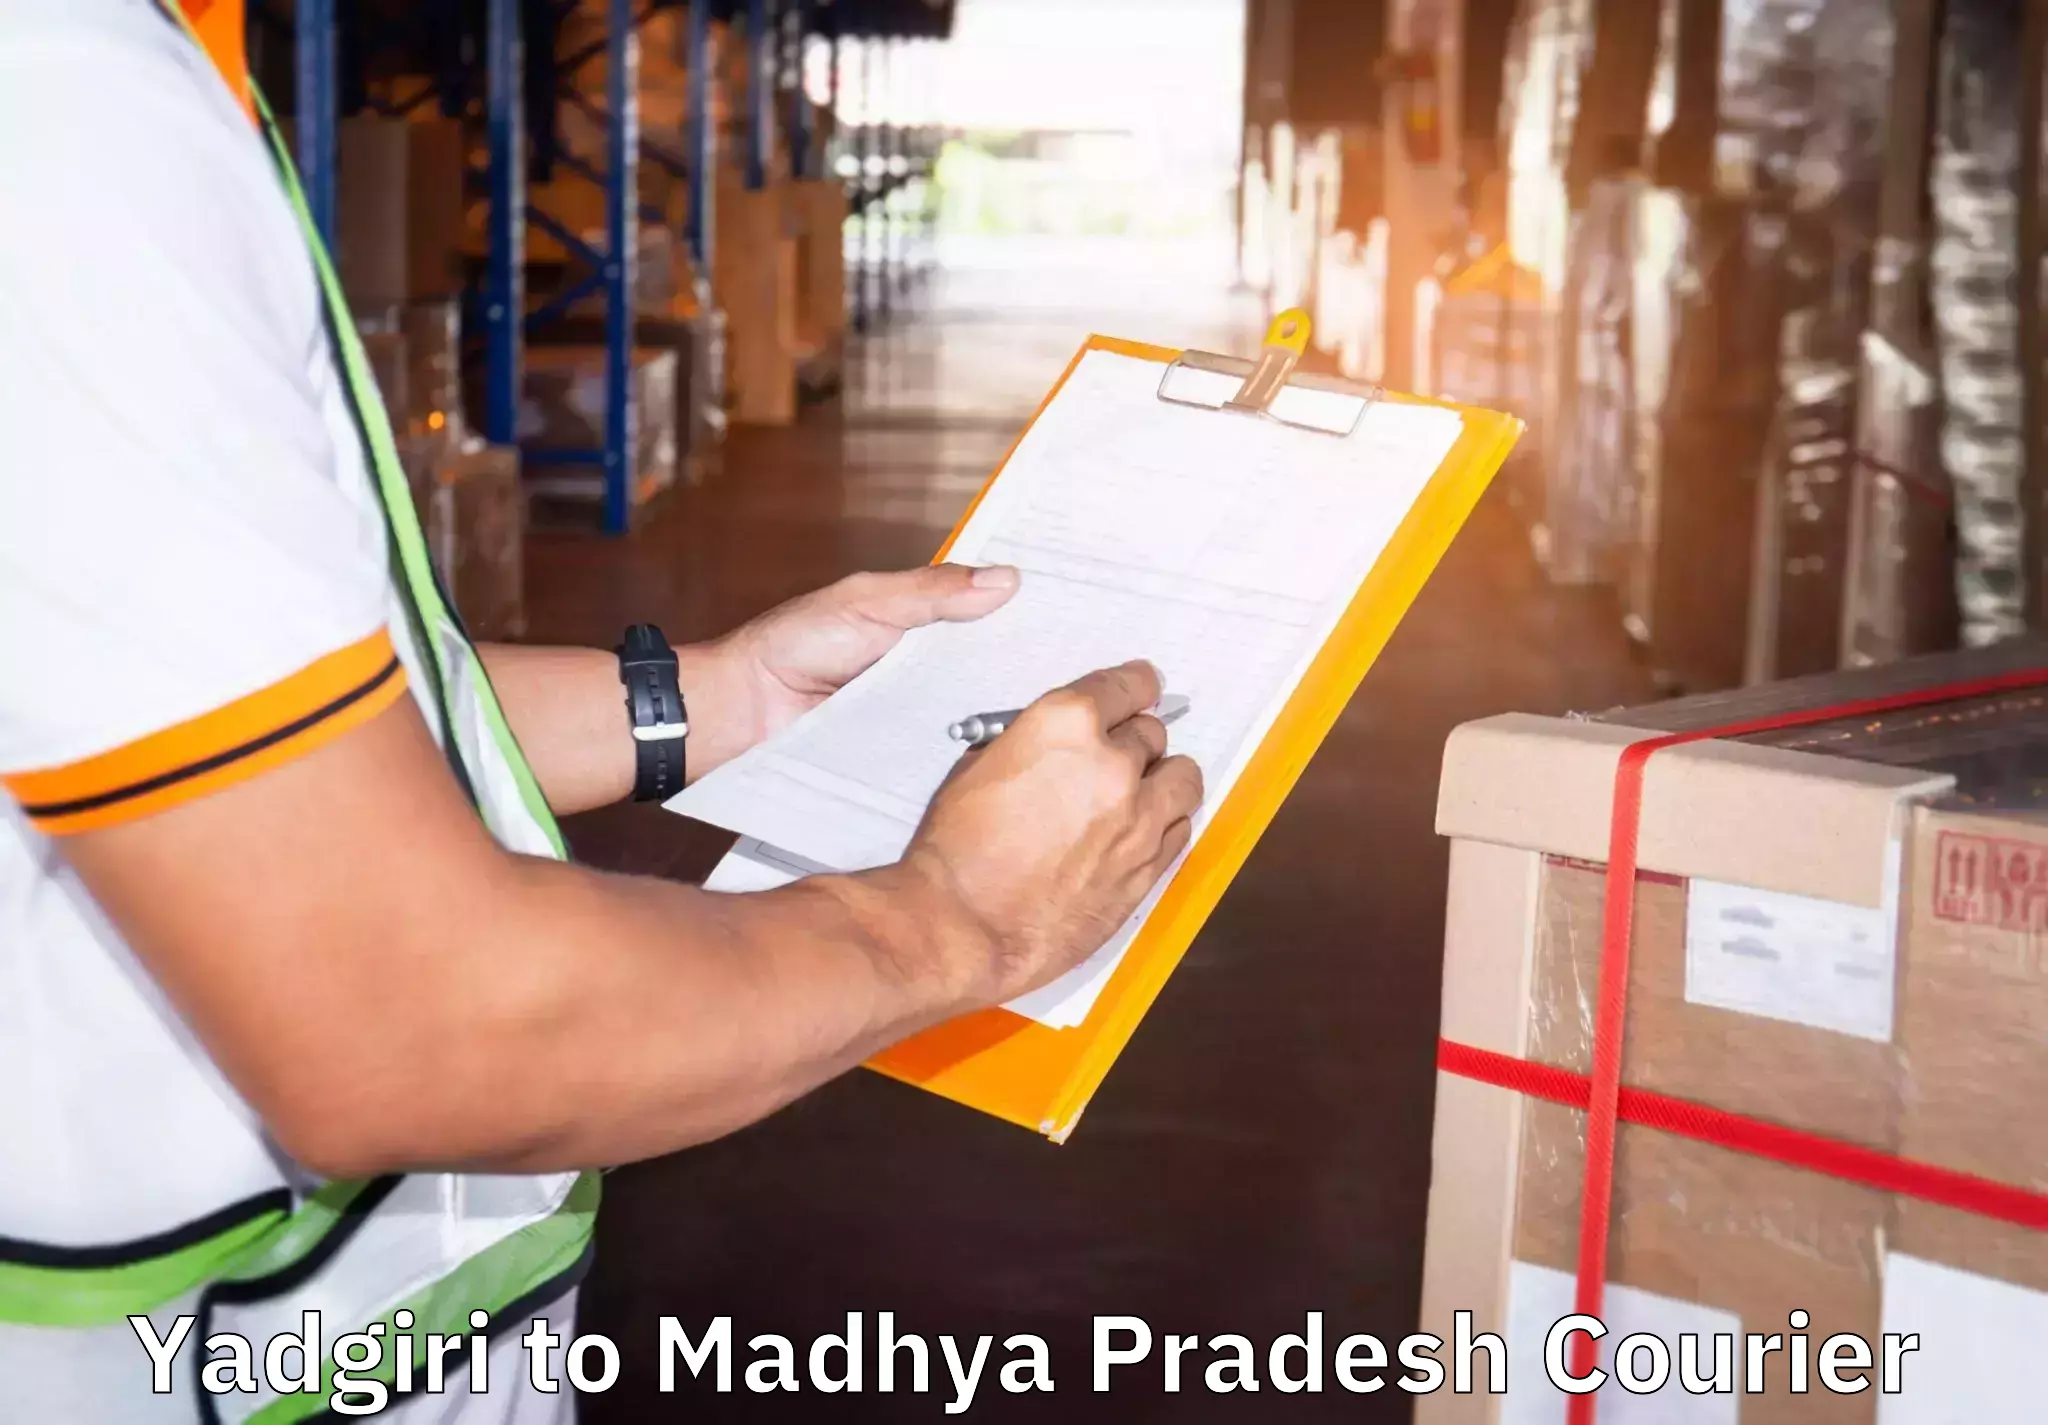 Specialized moving company Yadgiri to Khajuraho